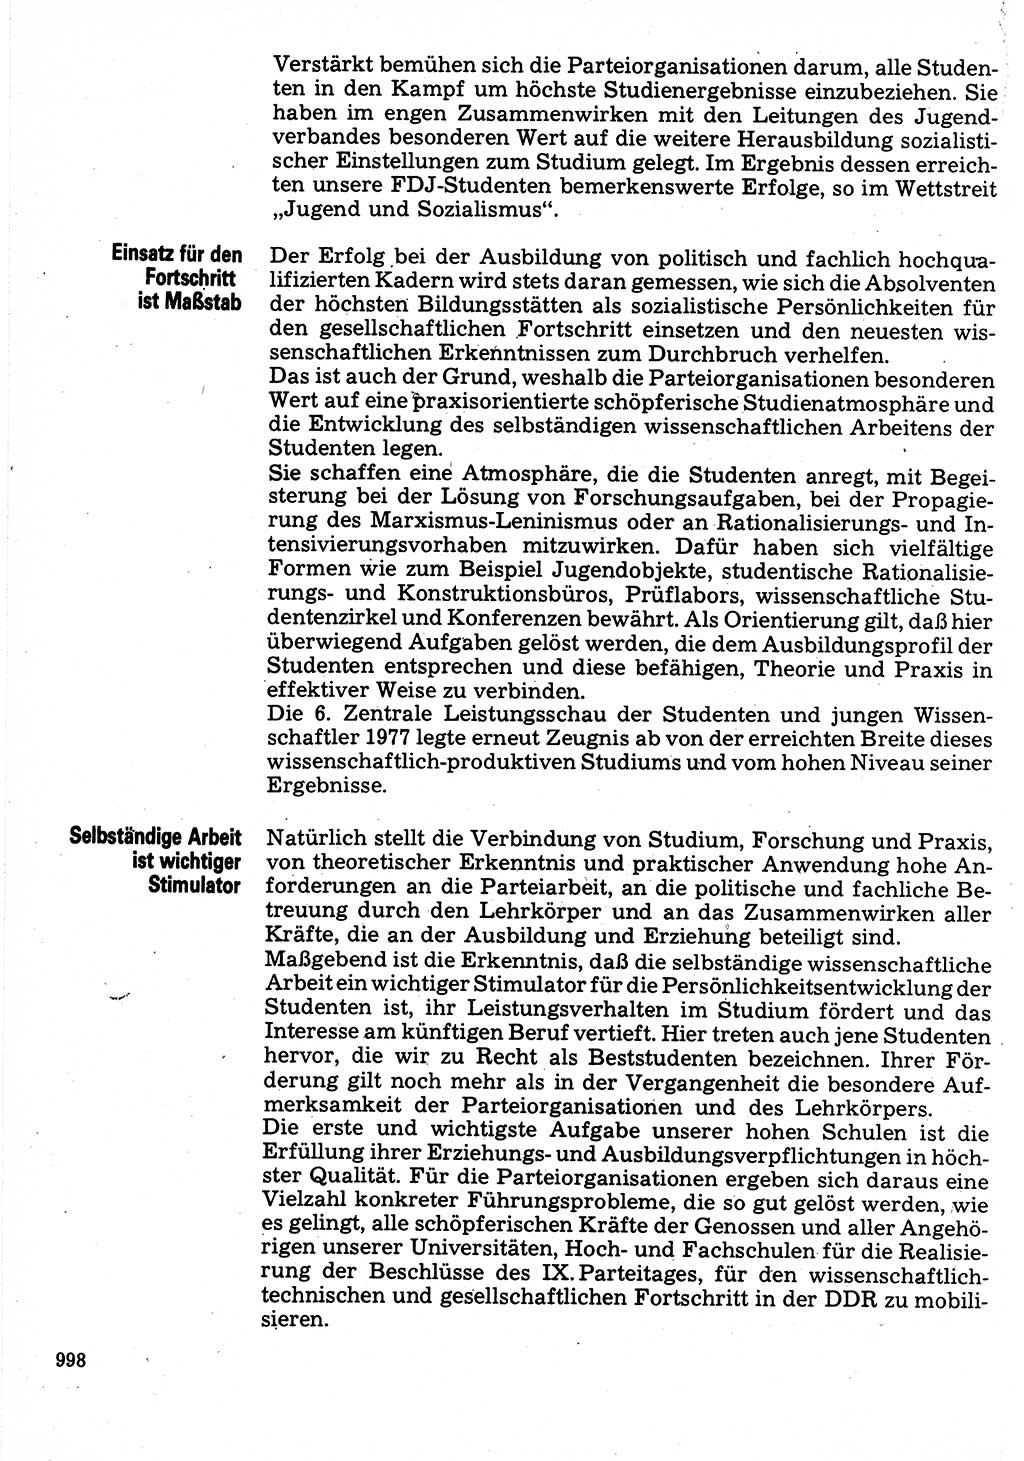 Neuer Weg (NW), Organ des Zentralkomitees (ZK) der SED (Sozialistische Einheitspartei Deutschlands) für Fragen des Parteilebens, 32. Jahrgang [Deutsche Demokratische Republik (DDR)] 1977, Seite 998 (NW ZK SED DDR 1977, S. 998)